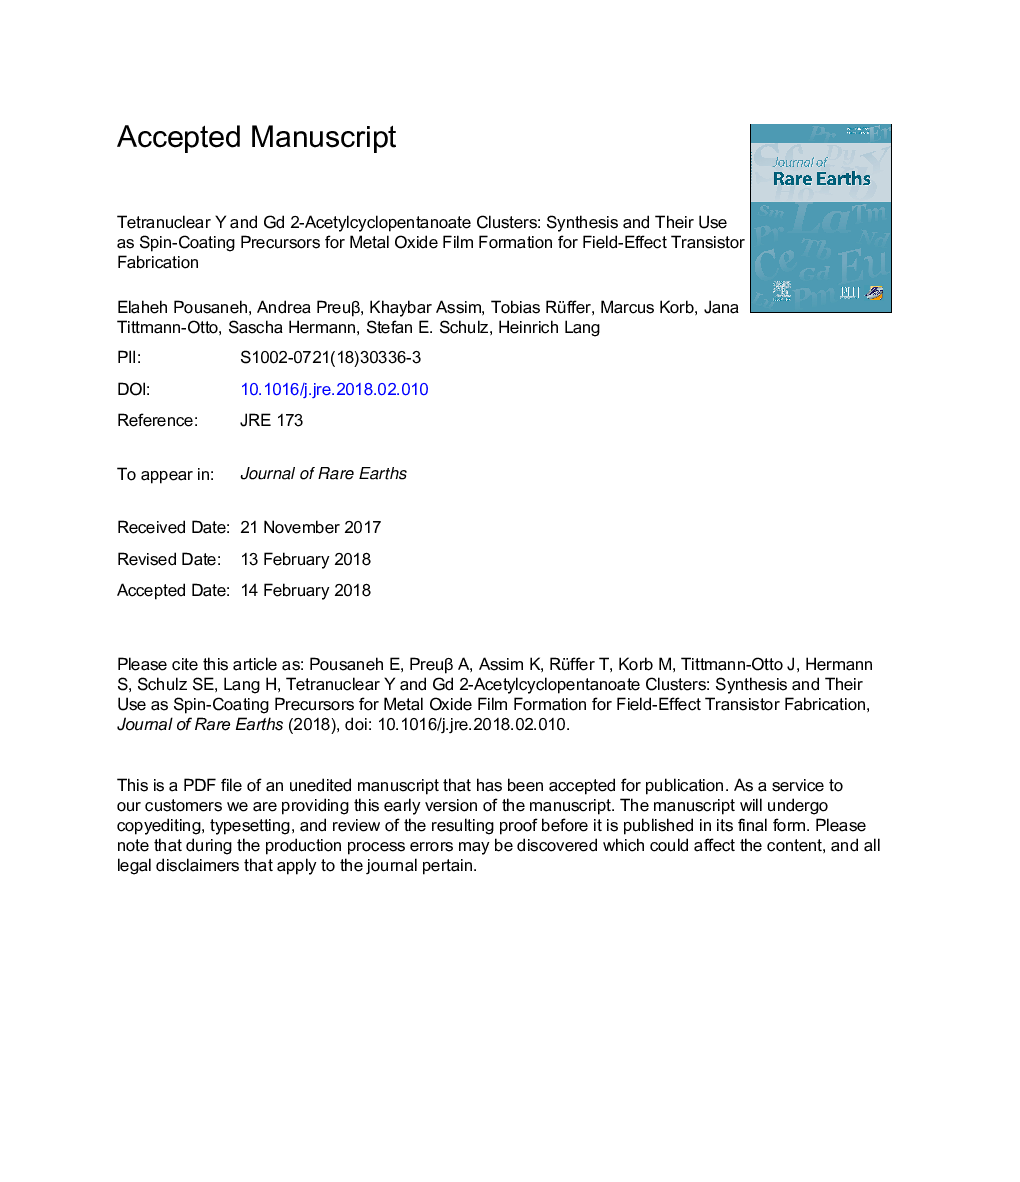 خواص هیدروکلریکی یتیم و گادولینیم 2-استیل سیکلوپنتانوئات: سنتز و استفاده از آنها به عنوان پیشروهای پوشش اسپین برای تشکیل پلی اکسید فلزی برای ساخت ترانزیستور میدان اثر